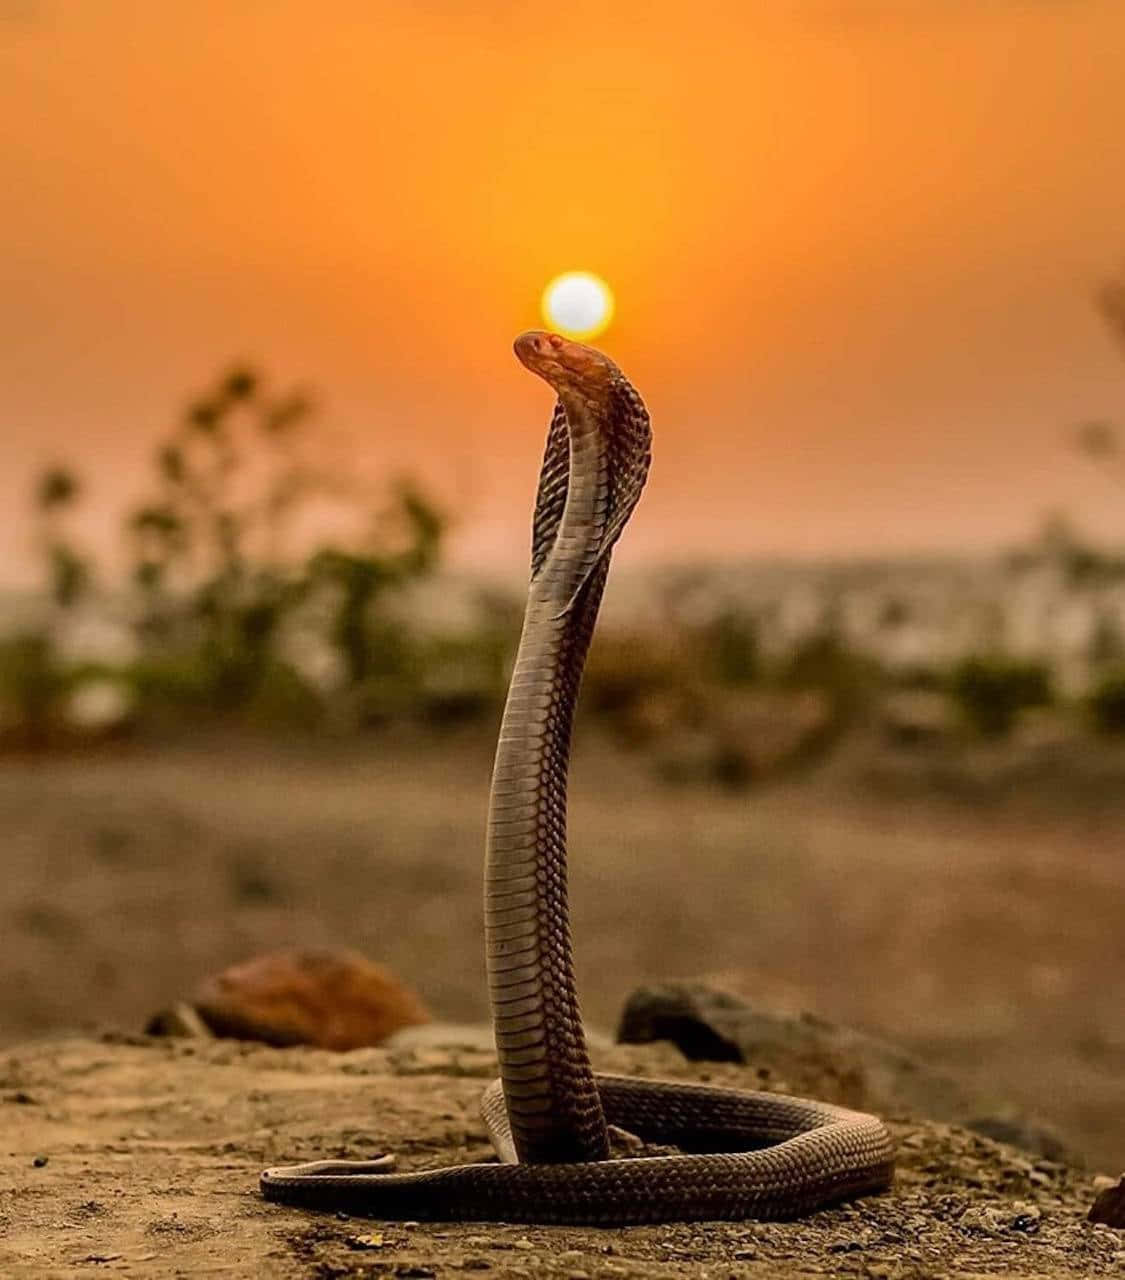 The Majestic King Cobra